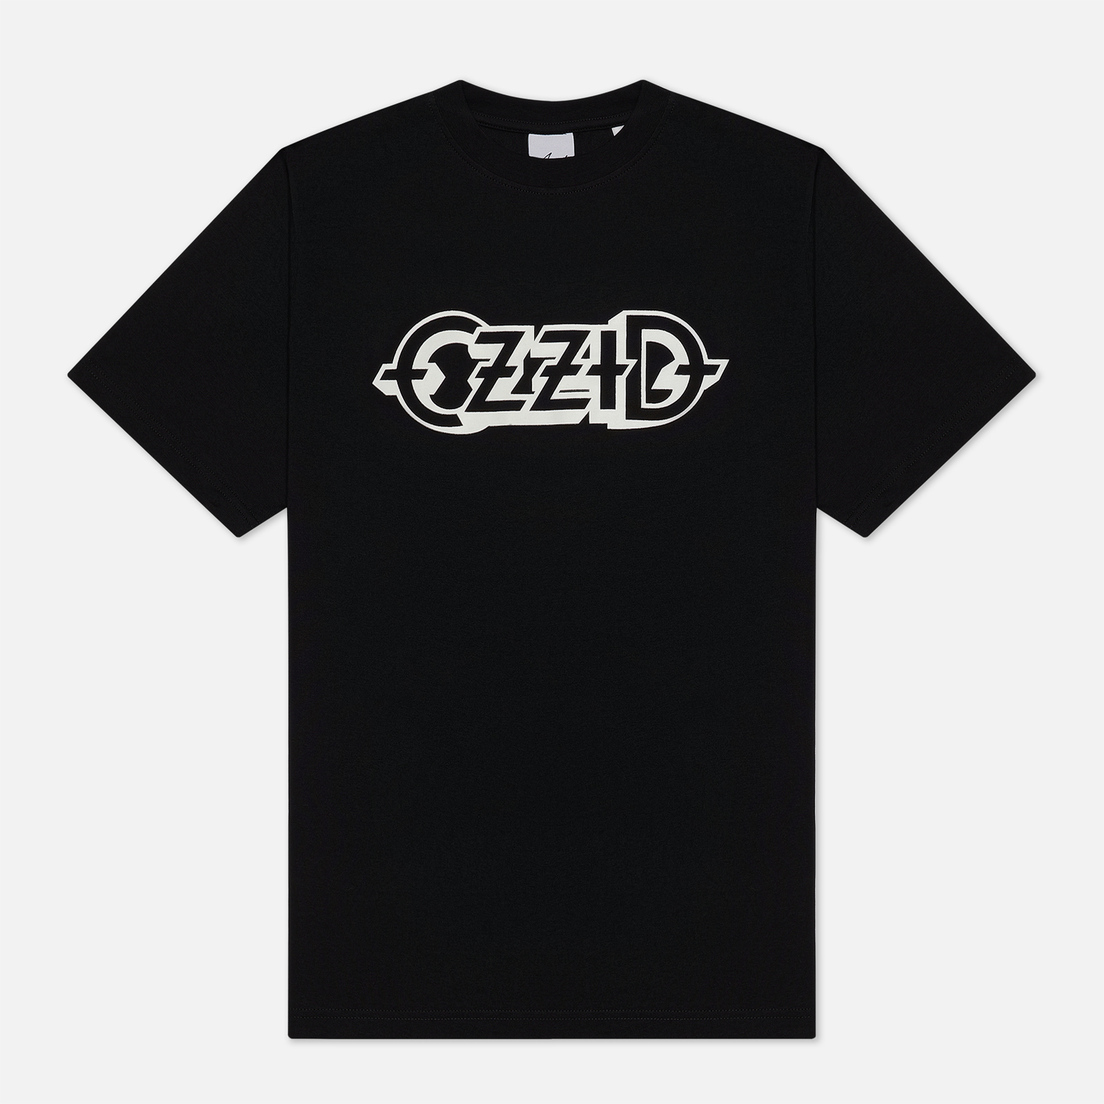 ASSID Мужская футболка Ozzid